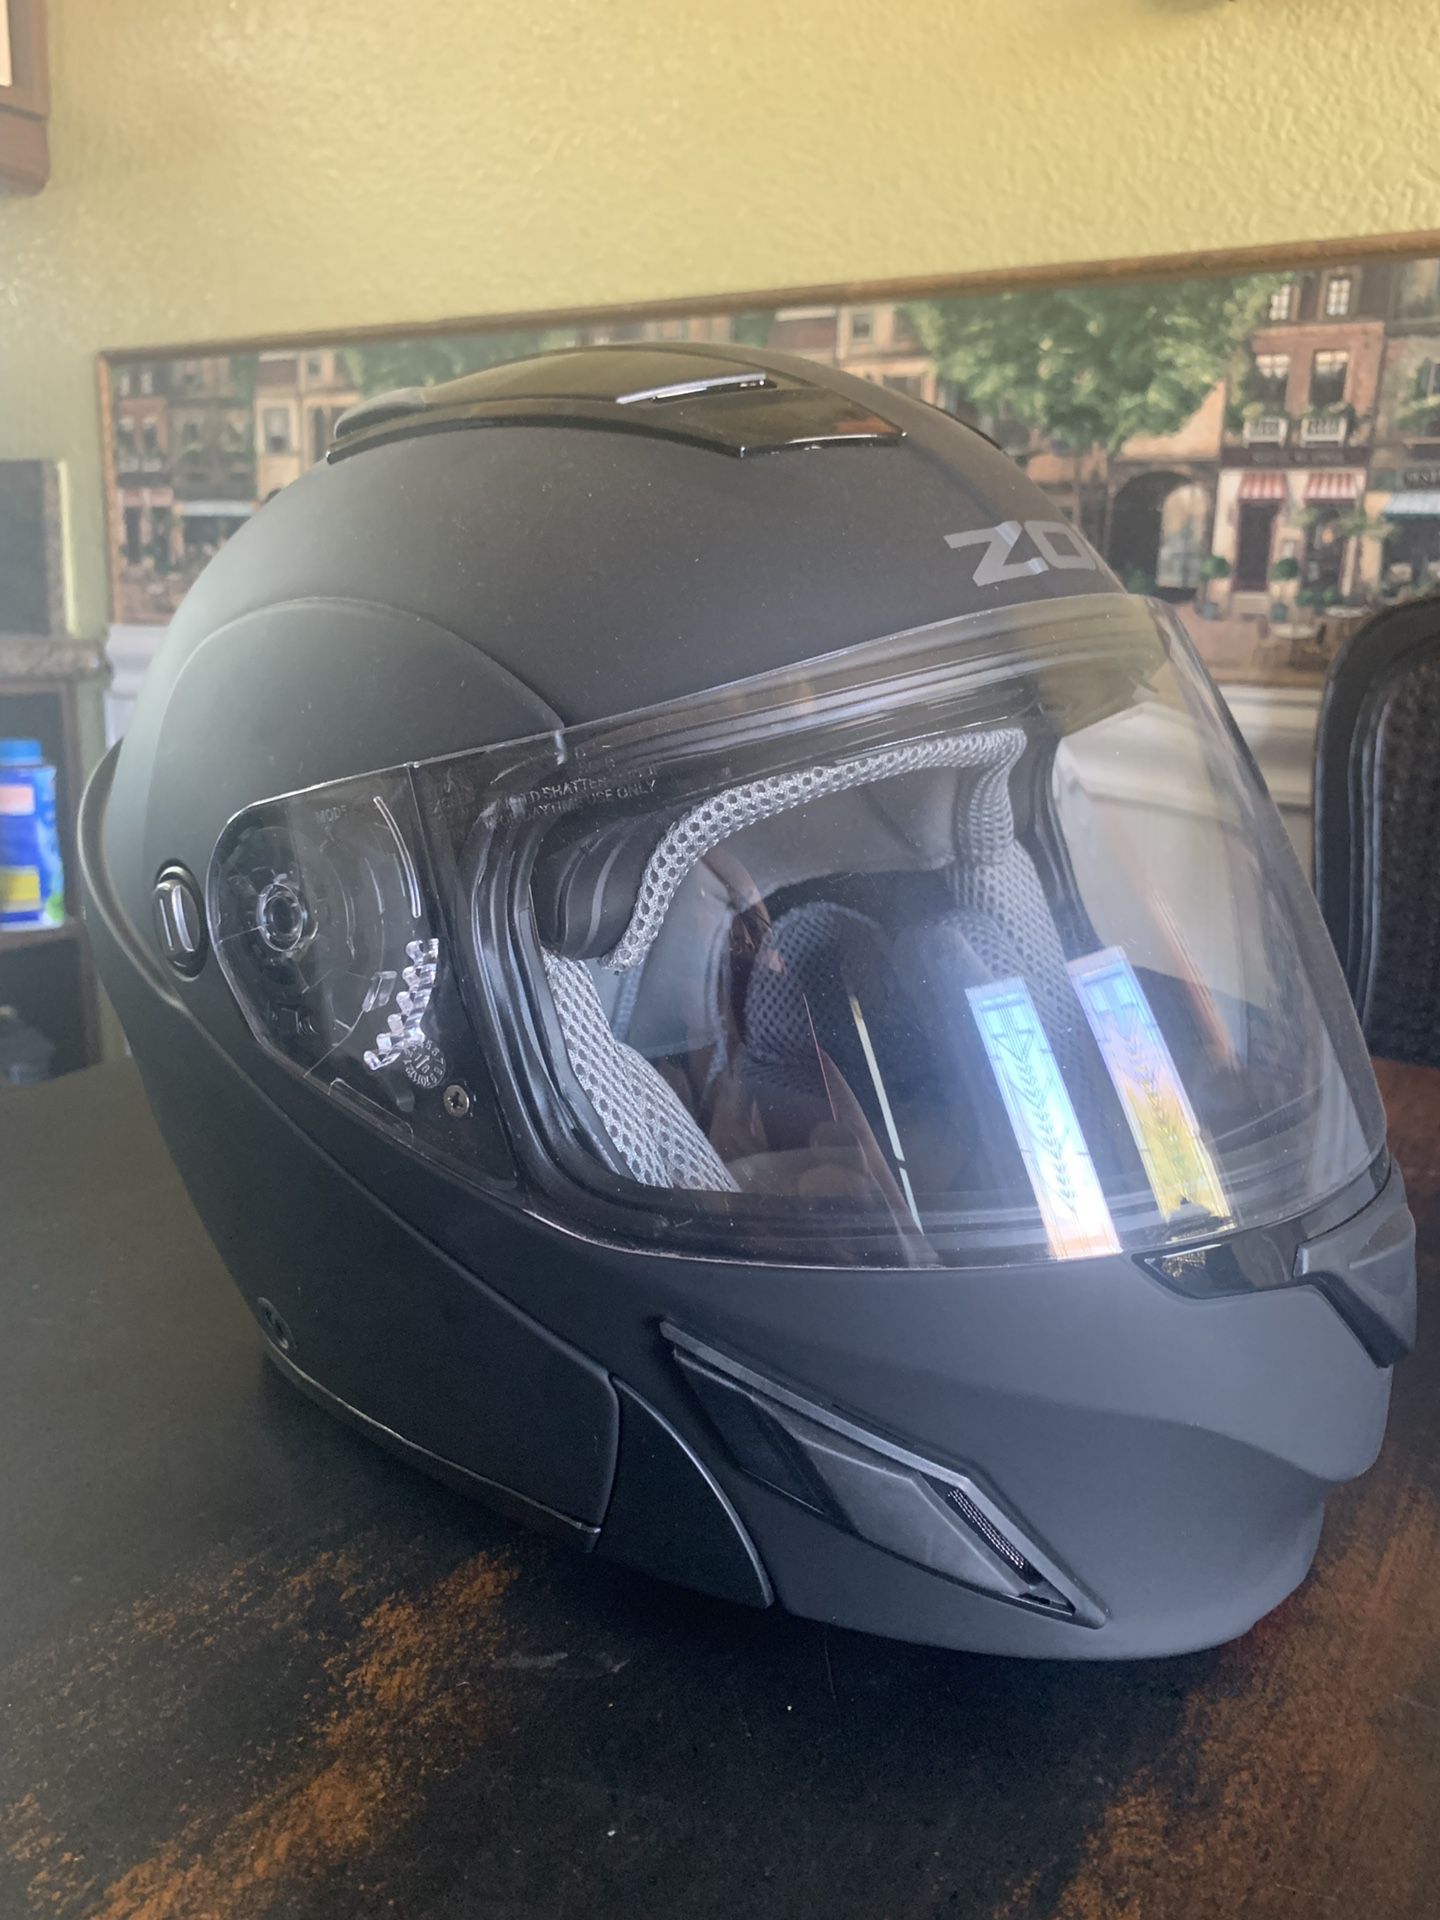 Large ZOX motorcycle helmet